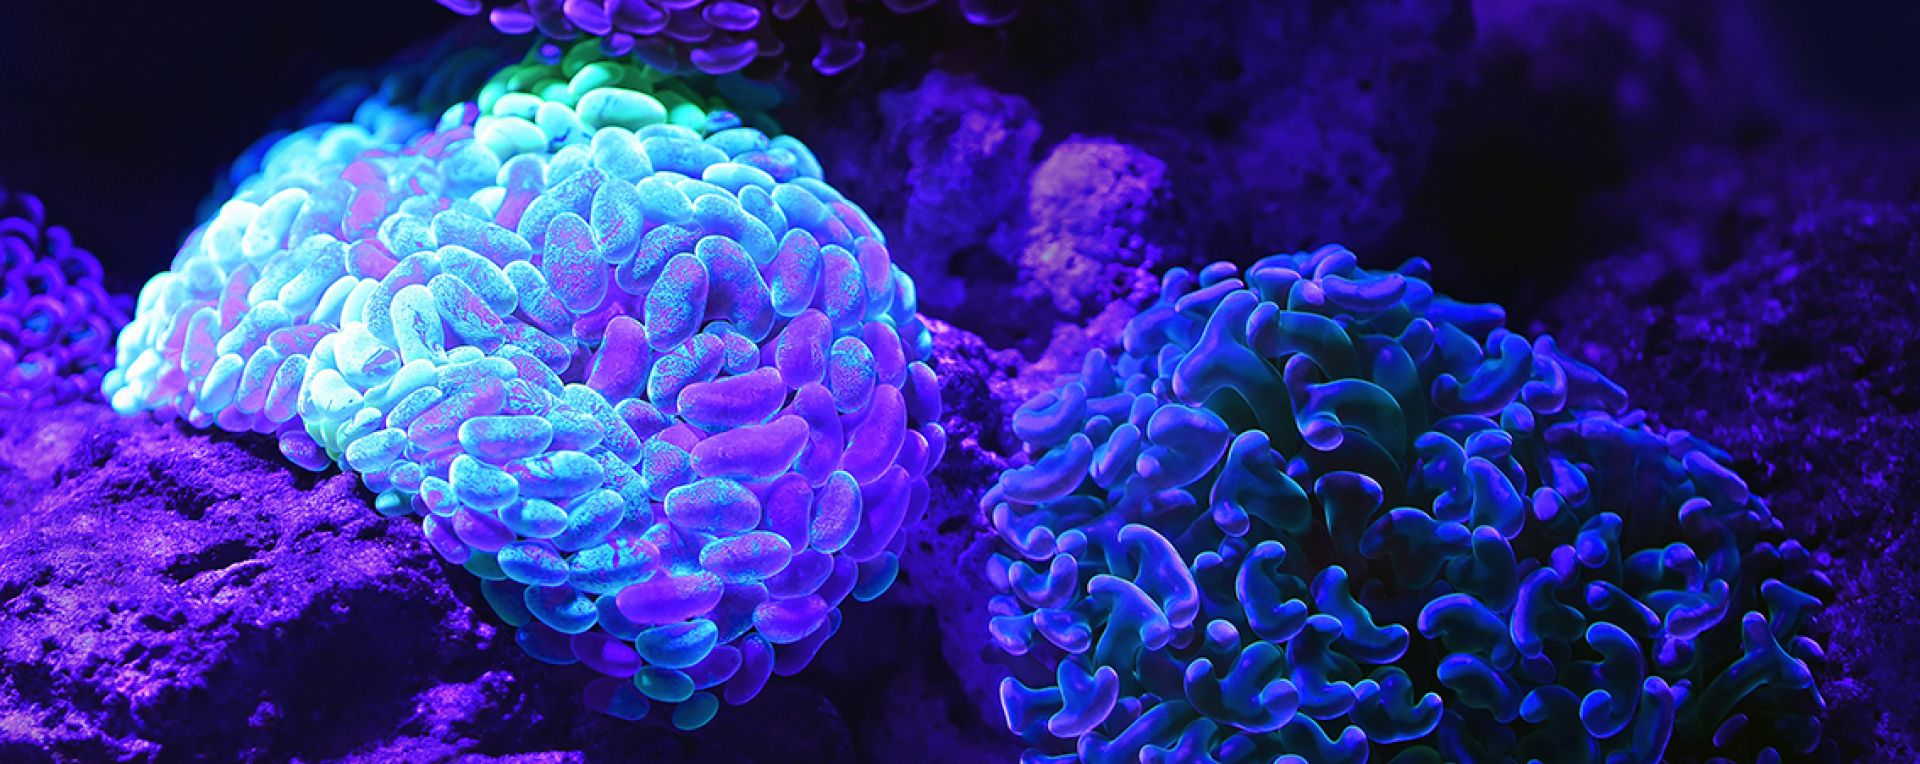 soft, brain-like coral